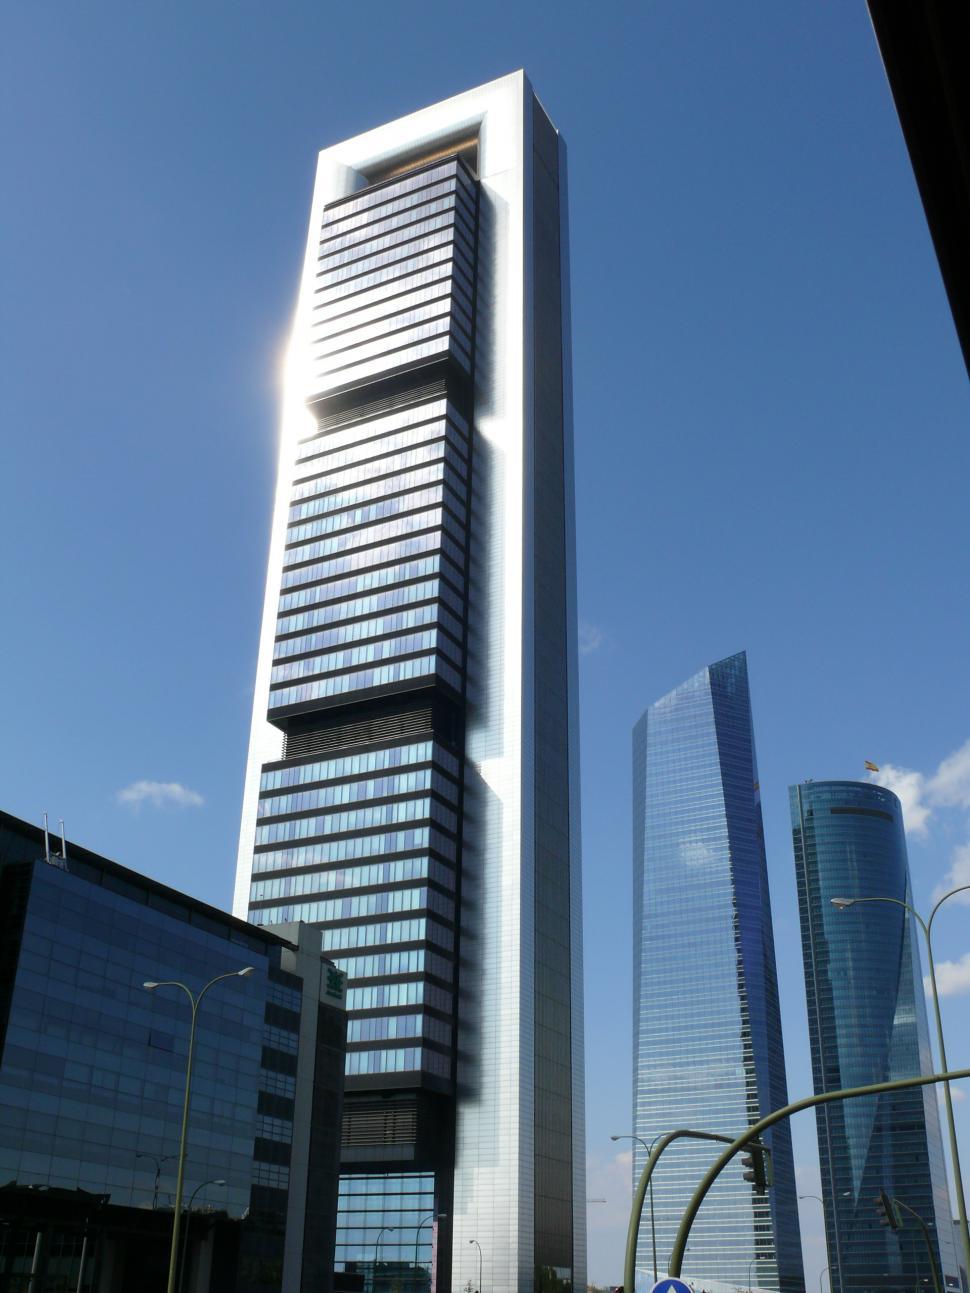 Free Image of Modern Buildings - Modern skyscrapers  